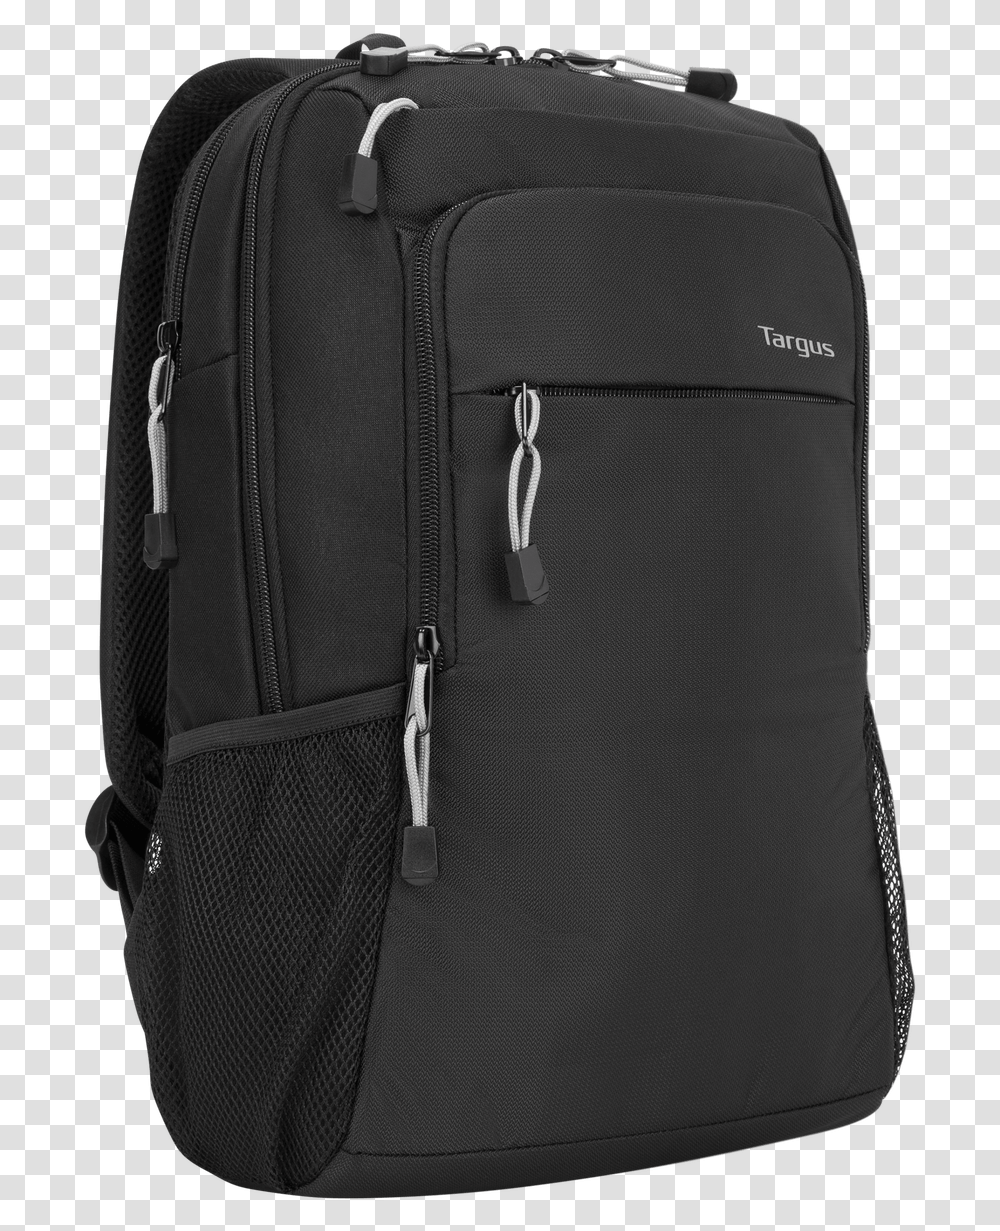 Marvel Black Panther Backpack Bag, Luggage, Suitcase, Briefcase Transparent Png